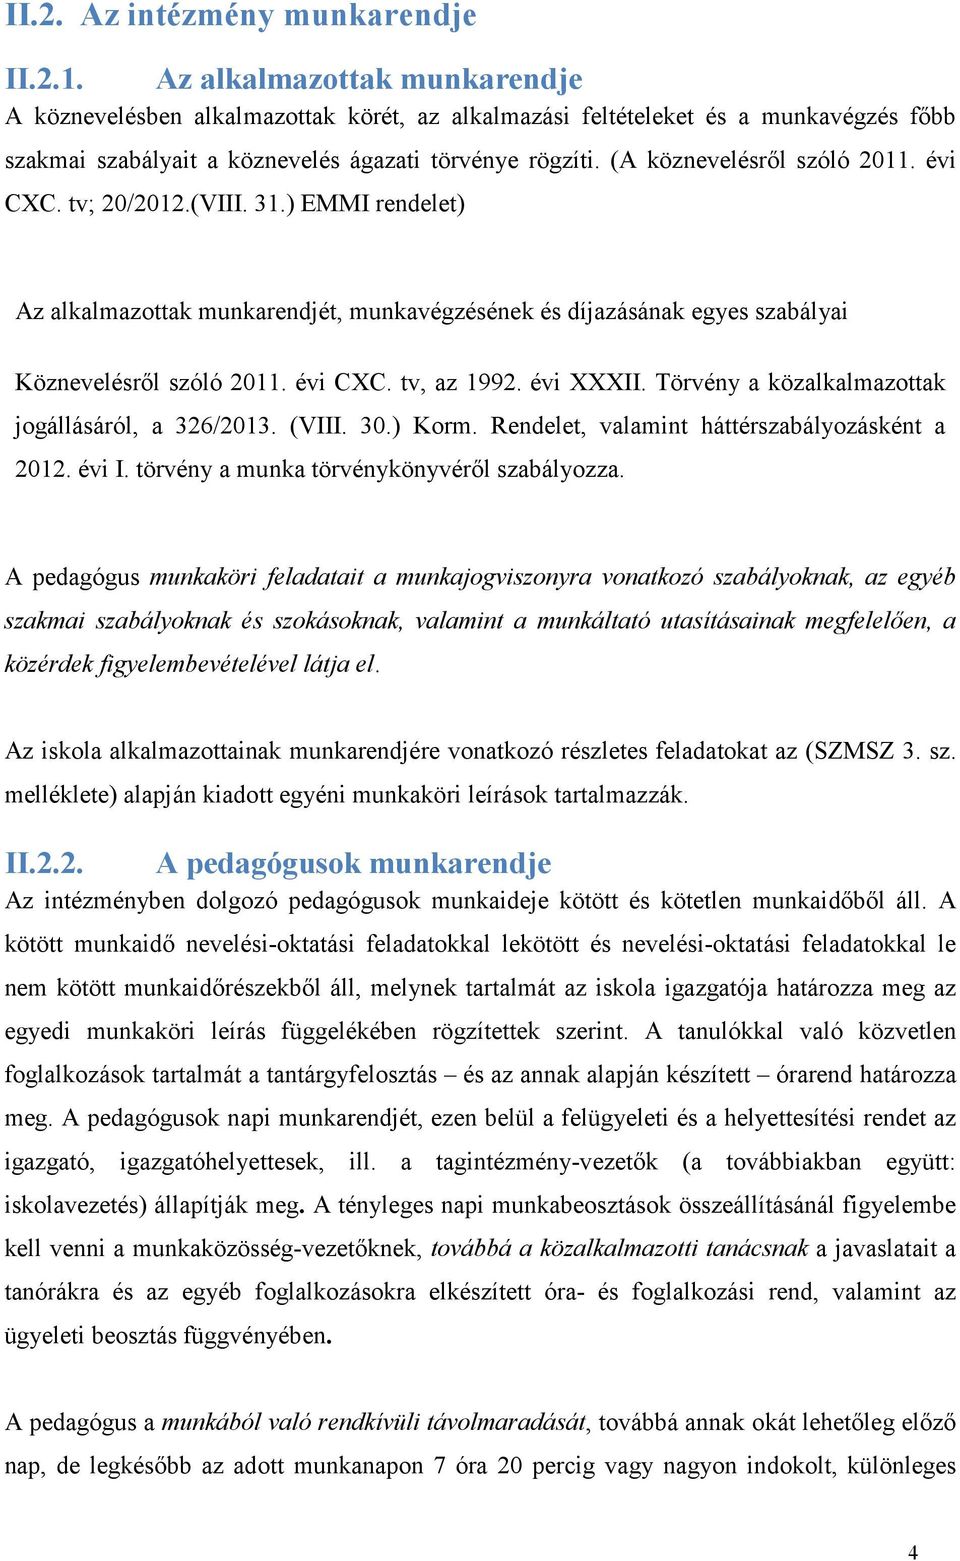 (A köznevelésről szóló 2011. évi CXC. tv; 20/2012.(VIII. 31.) EMMI rendelet) Az alkalmazottak munkarendjét, munkavégzésének és díjazásának egyes szabályai Köznevelésről szóló 2011. évi CXC. tv, az 1992.